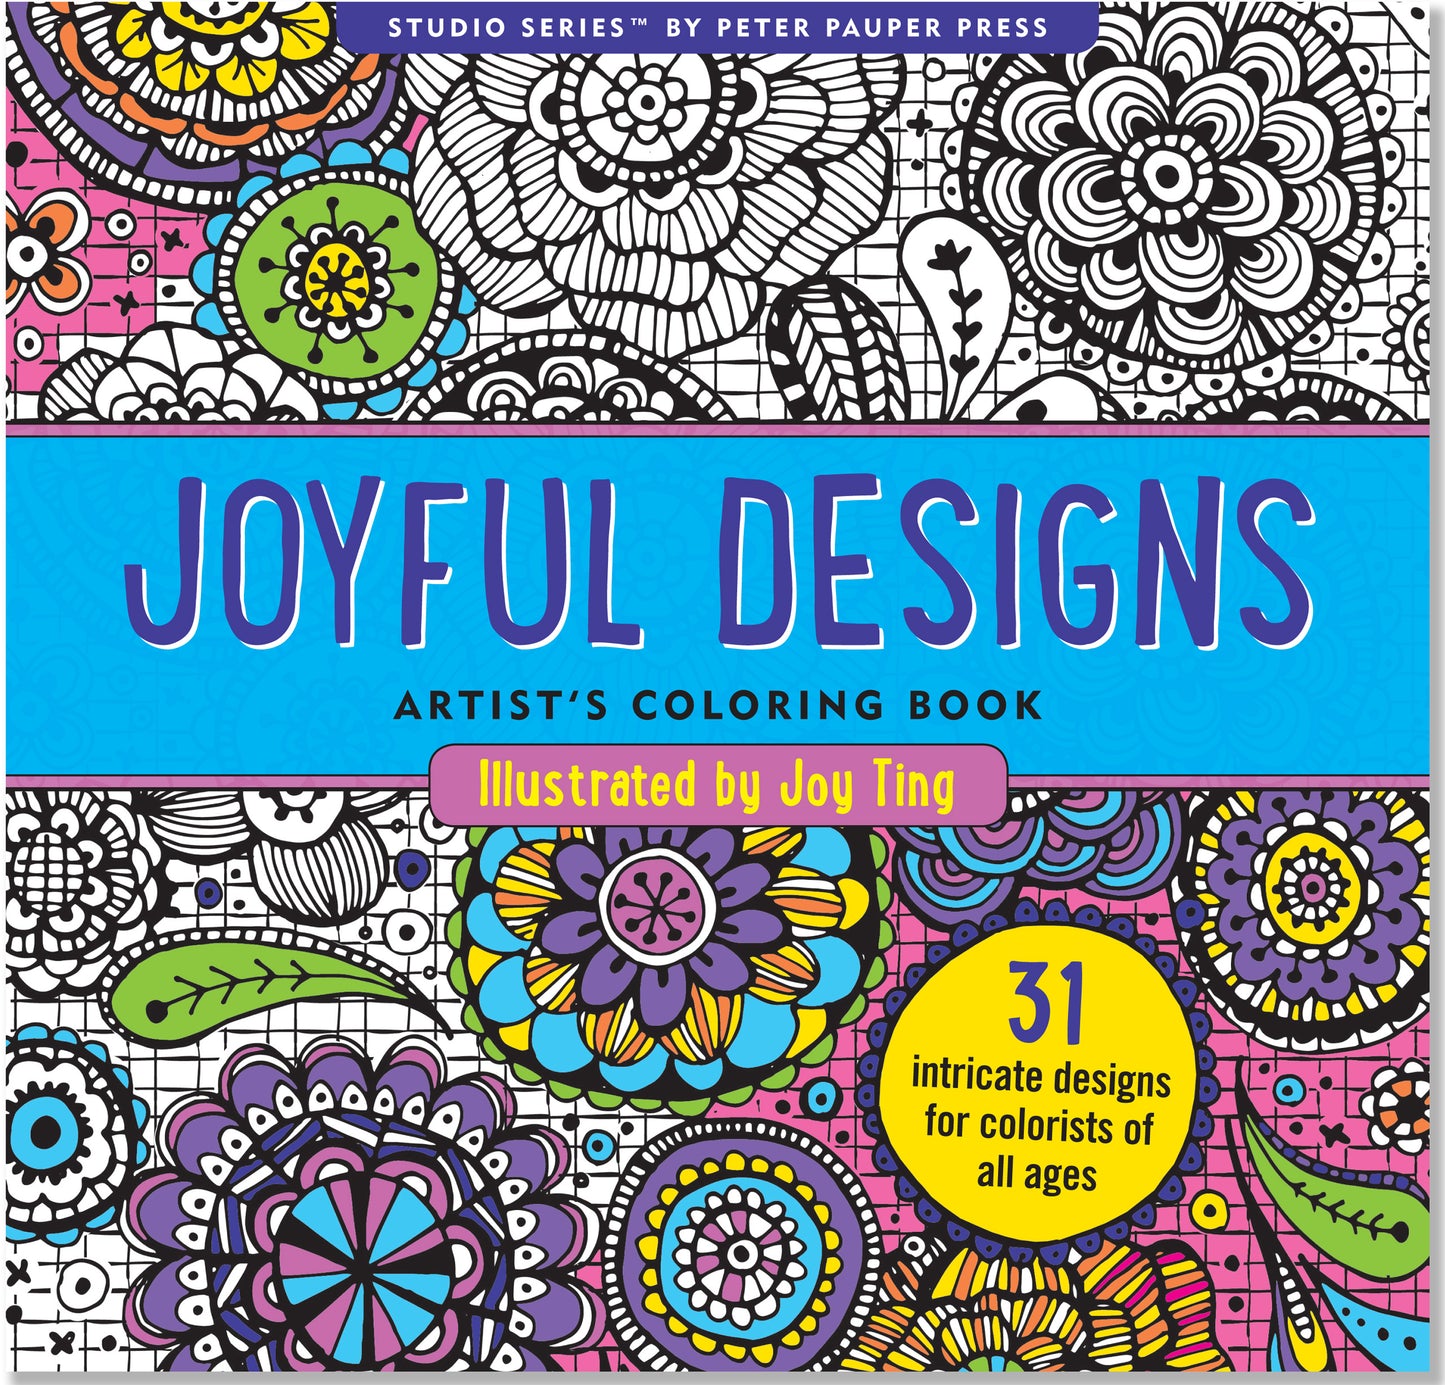 Peter Pauper Joyful Designs Artist's Colouring Book